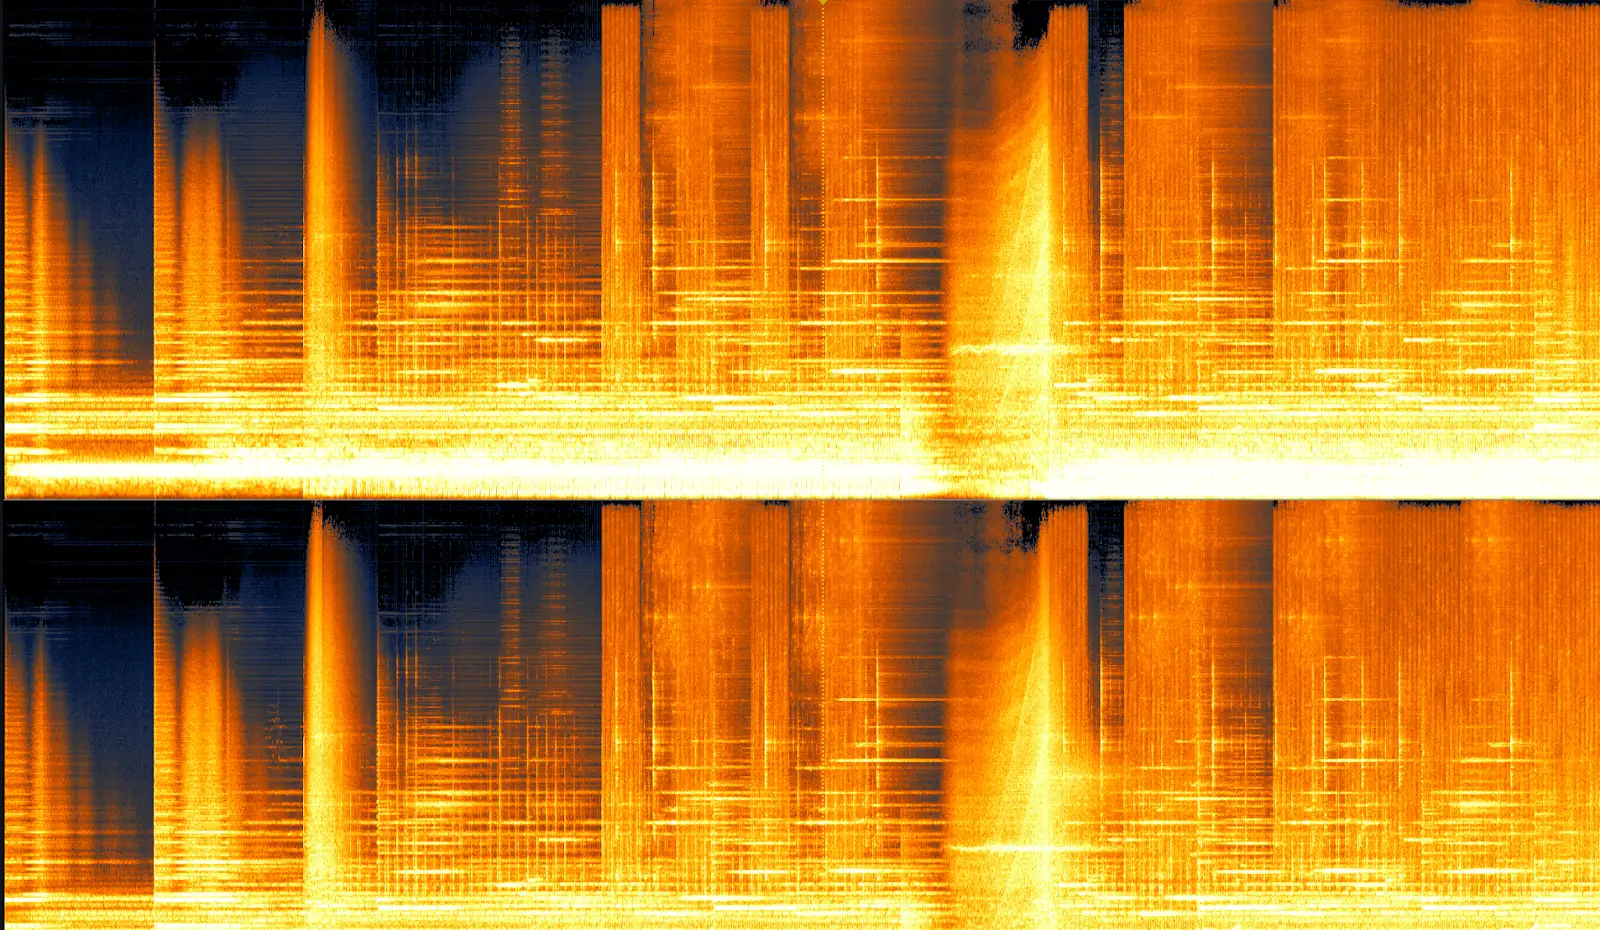 Bu da bir ay değil, ancak spektrogram formunda yukarıdaki ile aynı ses dosyası